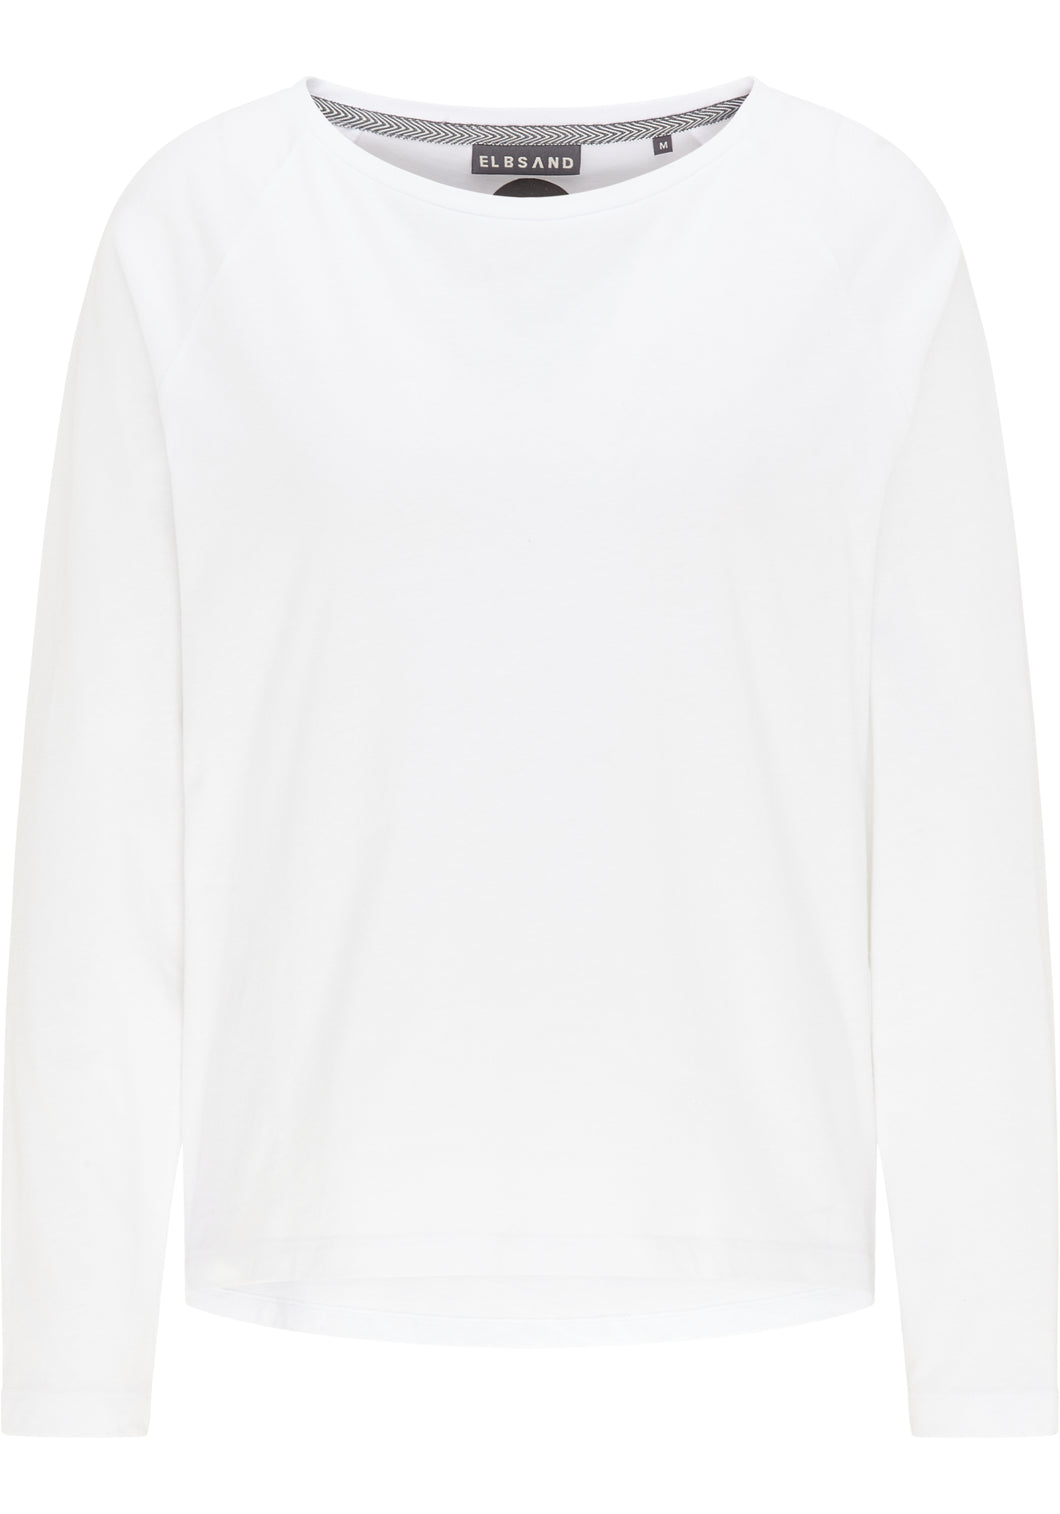 Elbsand T-Shirt Tinna Weiß